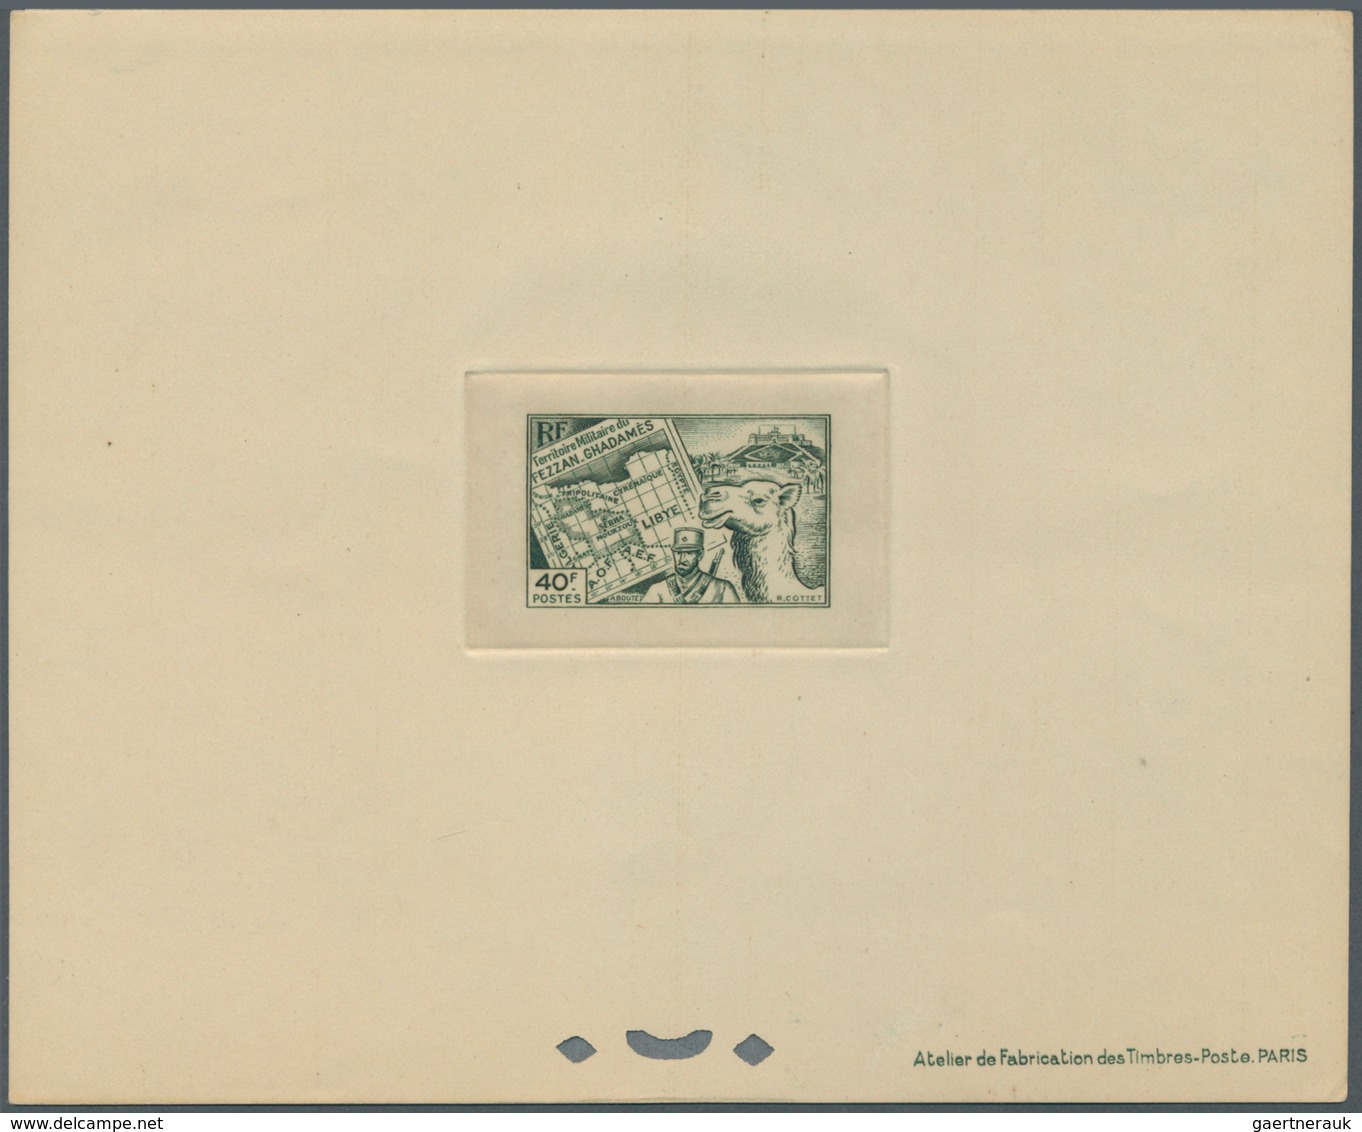 Fezzan: 1946, Definitives Pictorials, 10c. to 50fr., complete set of 15 values as epreuve de luxe. M